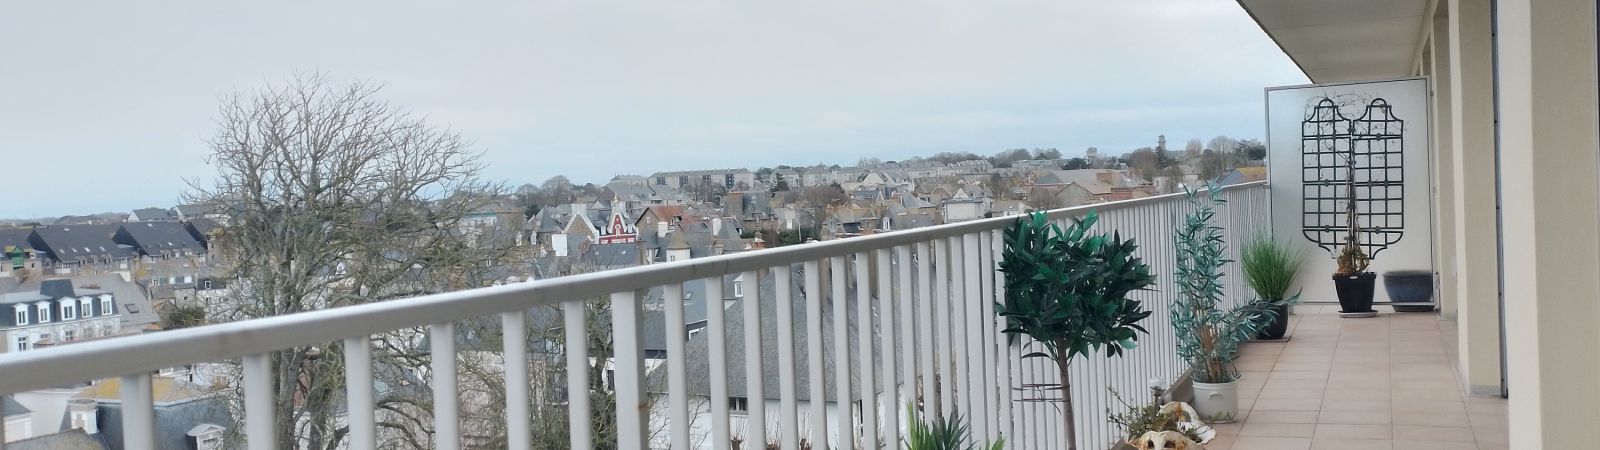 photo 6: Appartement 5 pièces TERRASSE  PARKING vue Panoramique sur Saint-Malo